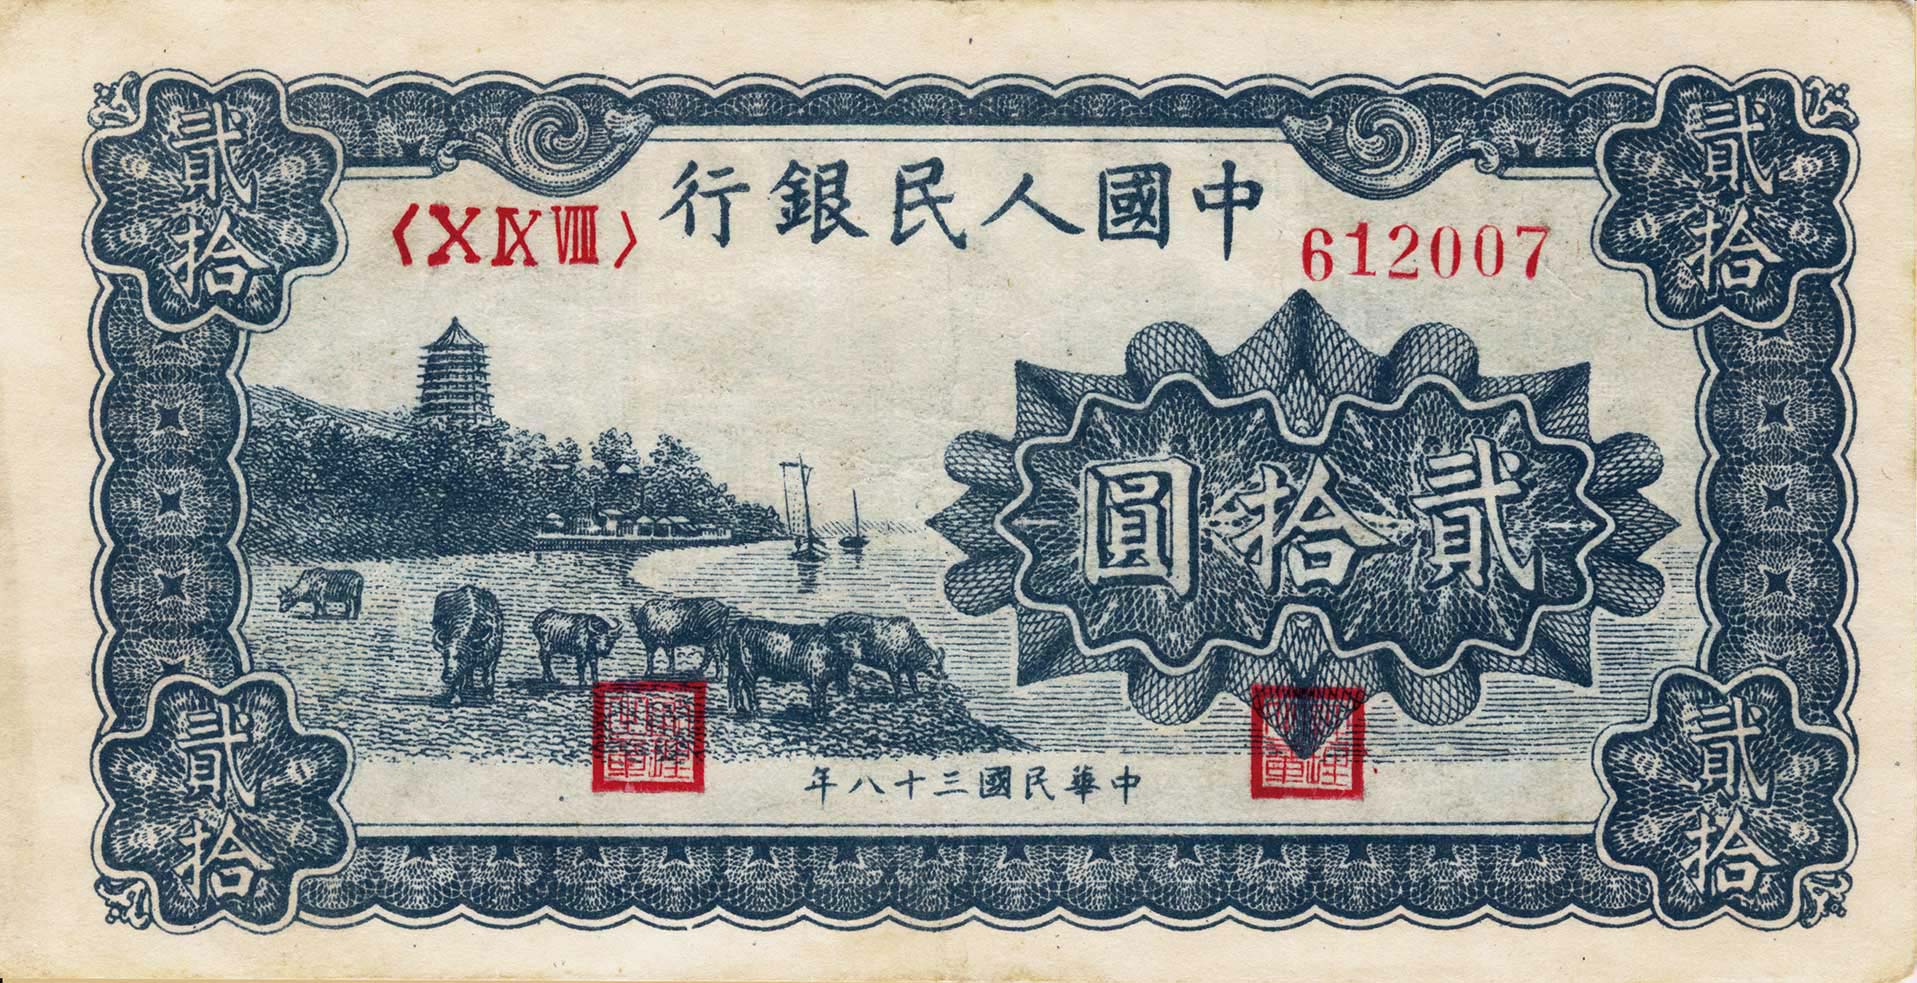 2019年版第五套人民币正式发行_新华社